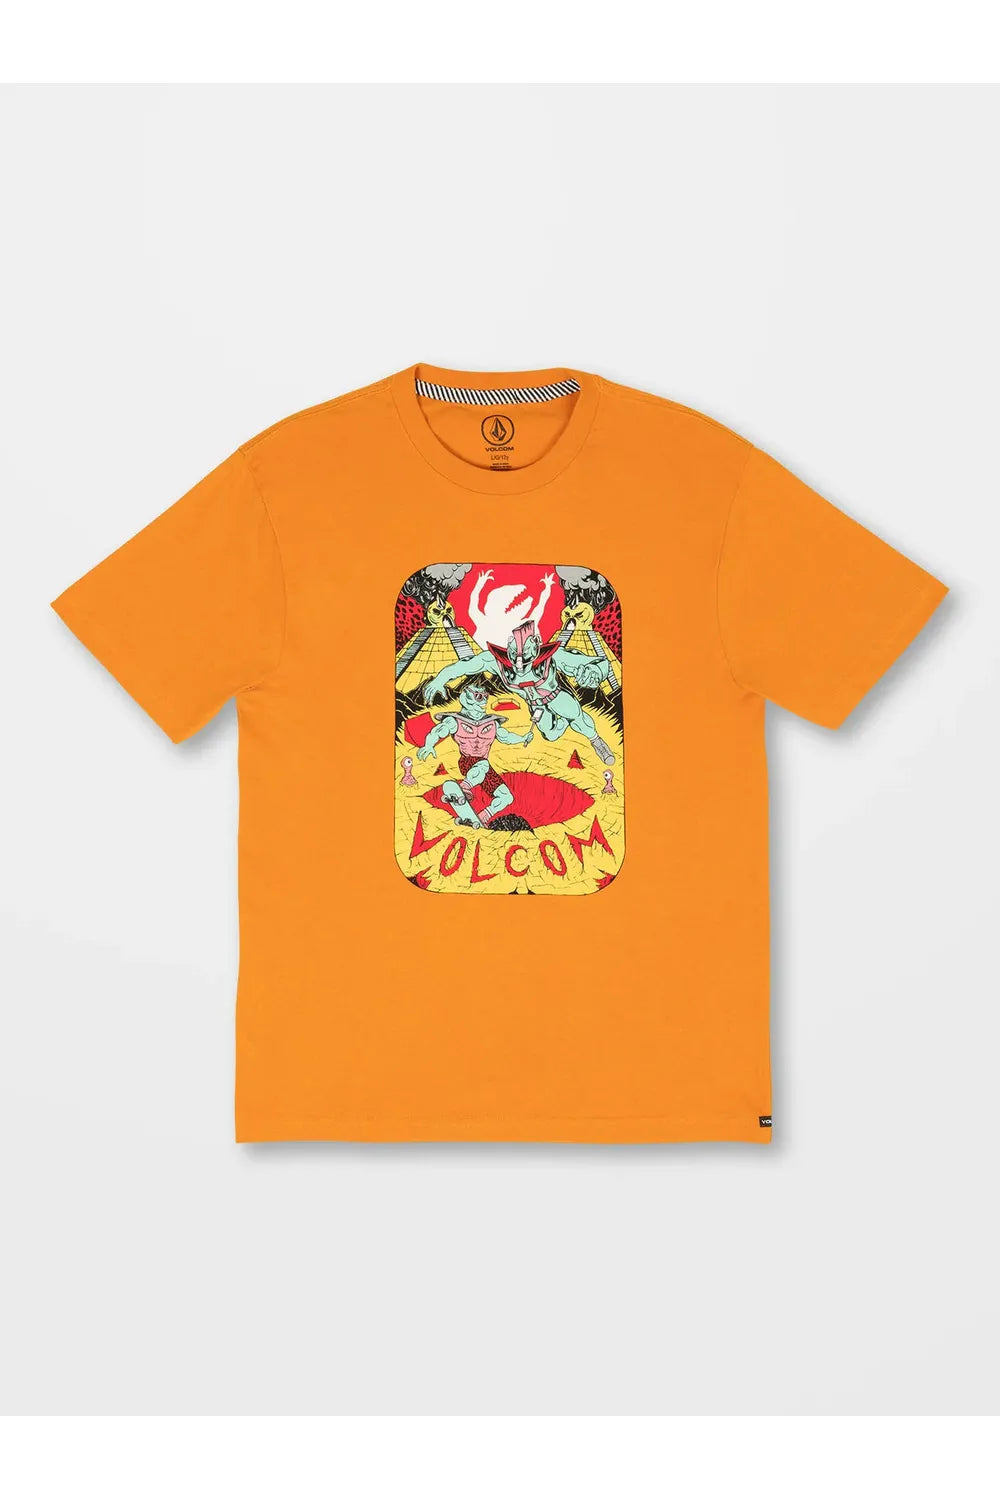 Volcom Sanair Kids Short Sleeve T-Shirt